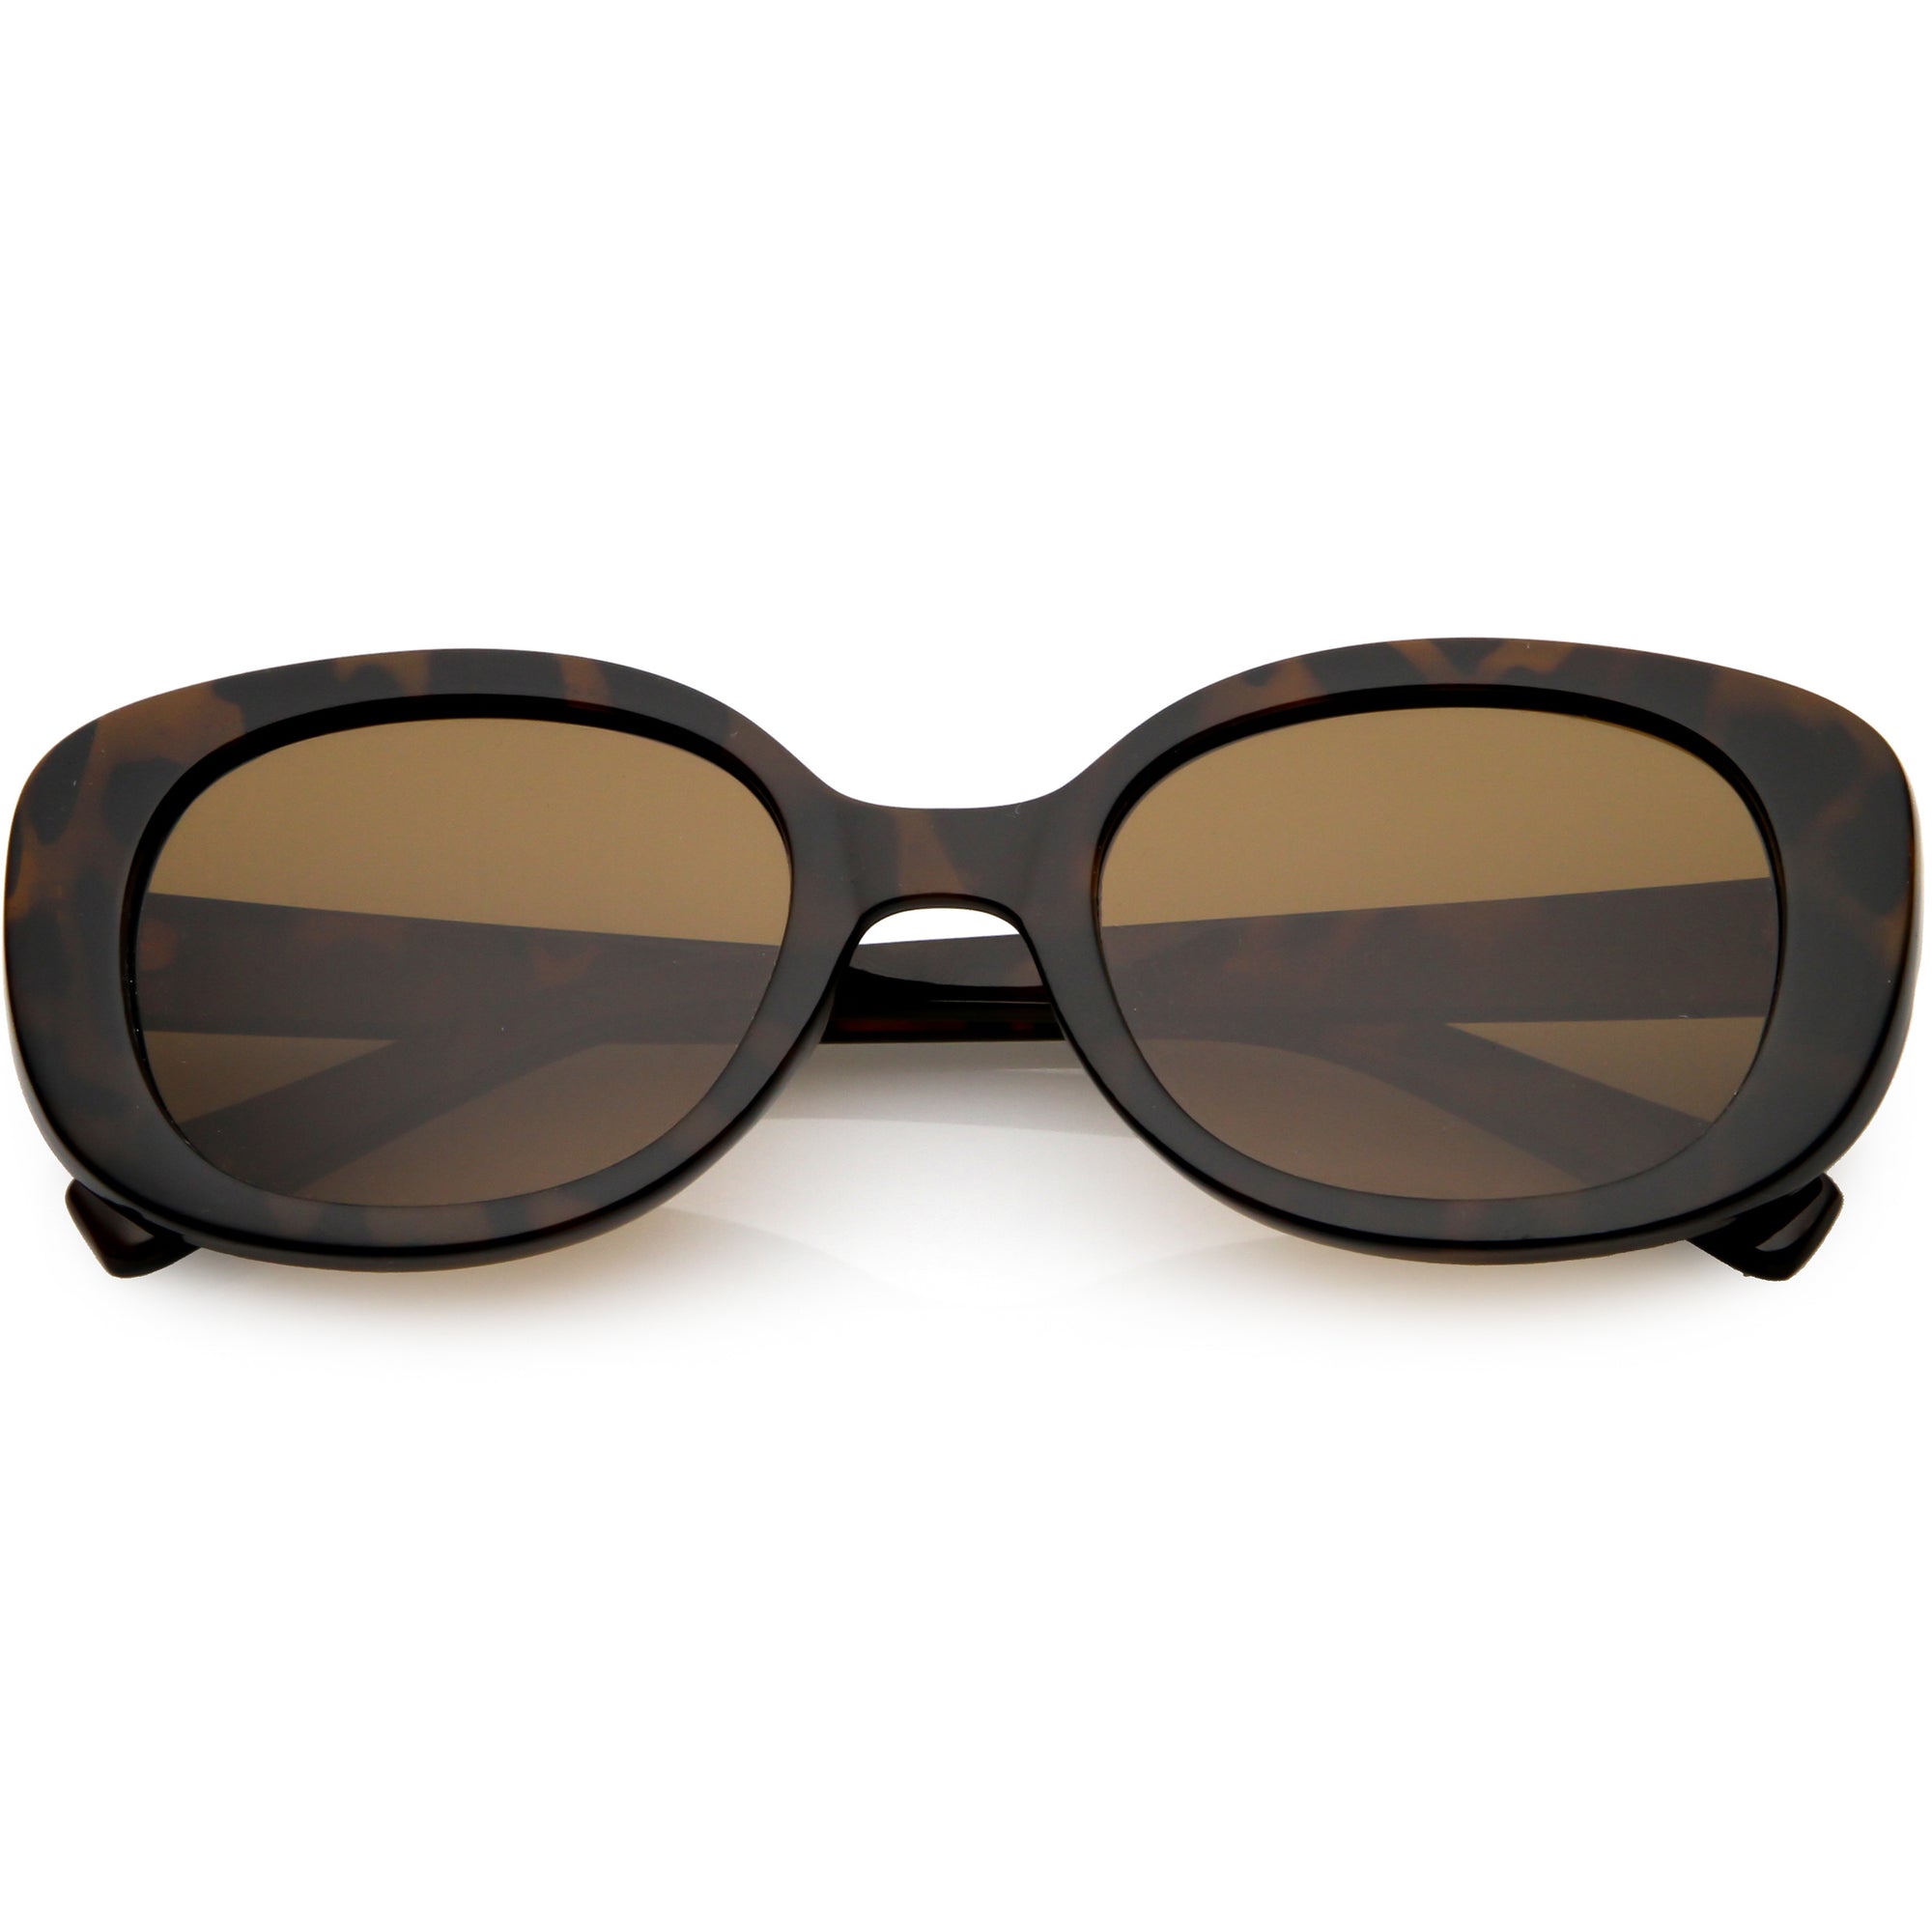 Gafas de sol ovaladas con lentes polarizadas retro y brazos anchos C926